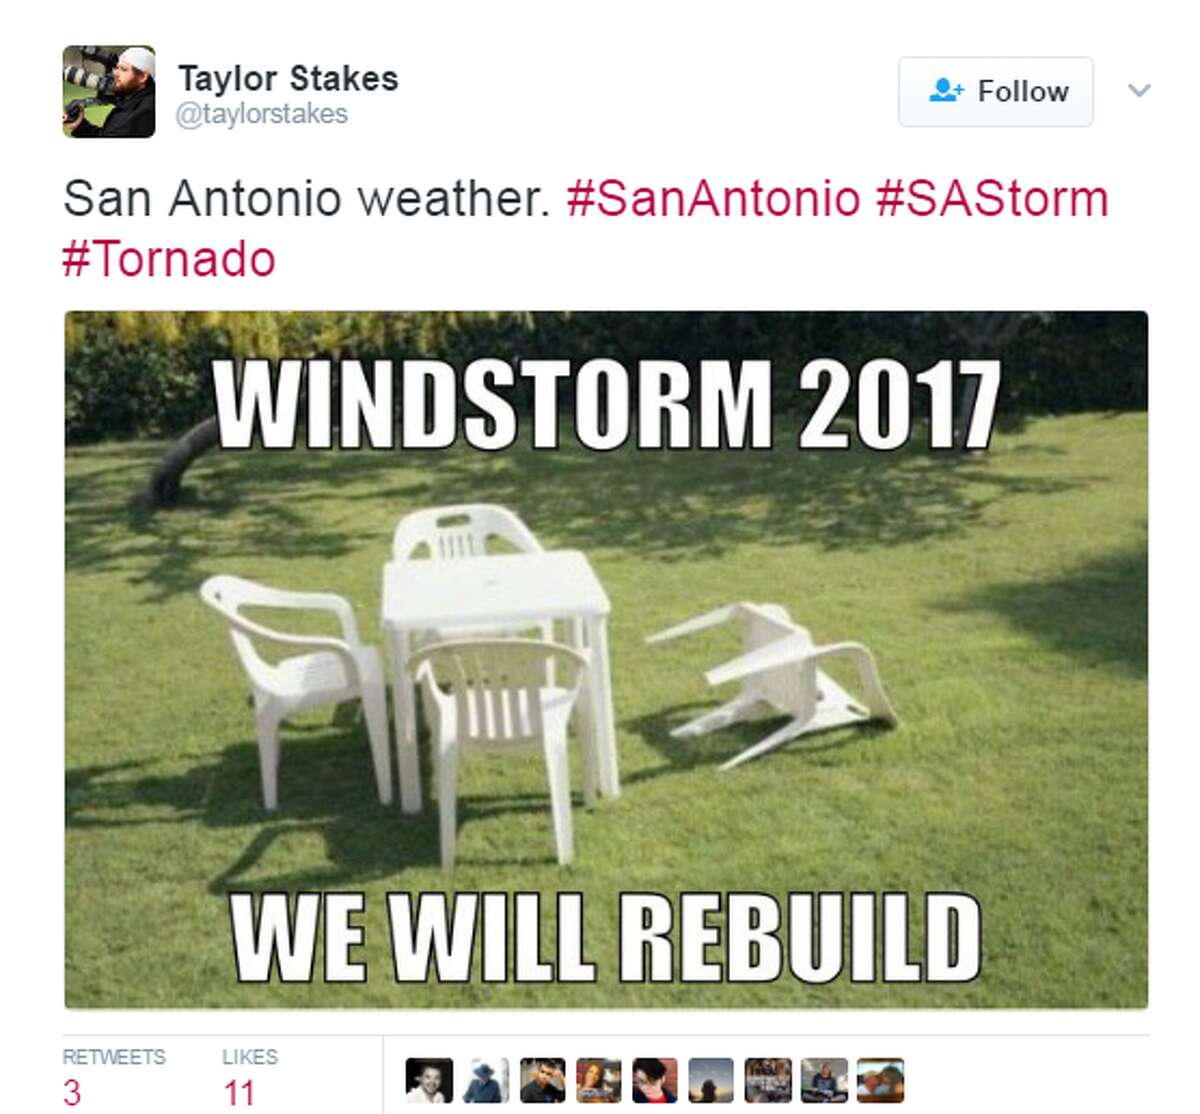 @taylorstakes: San Antonio weather. #SanAntonio #SAStorm #Tornado